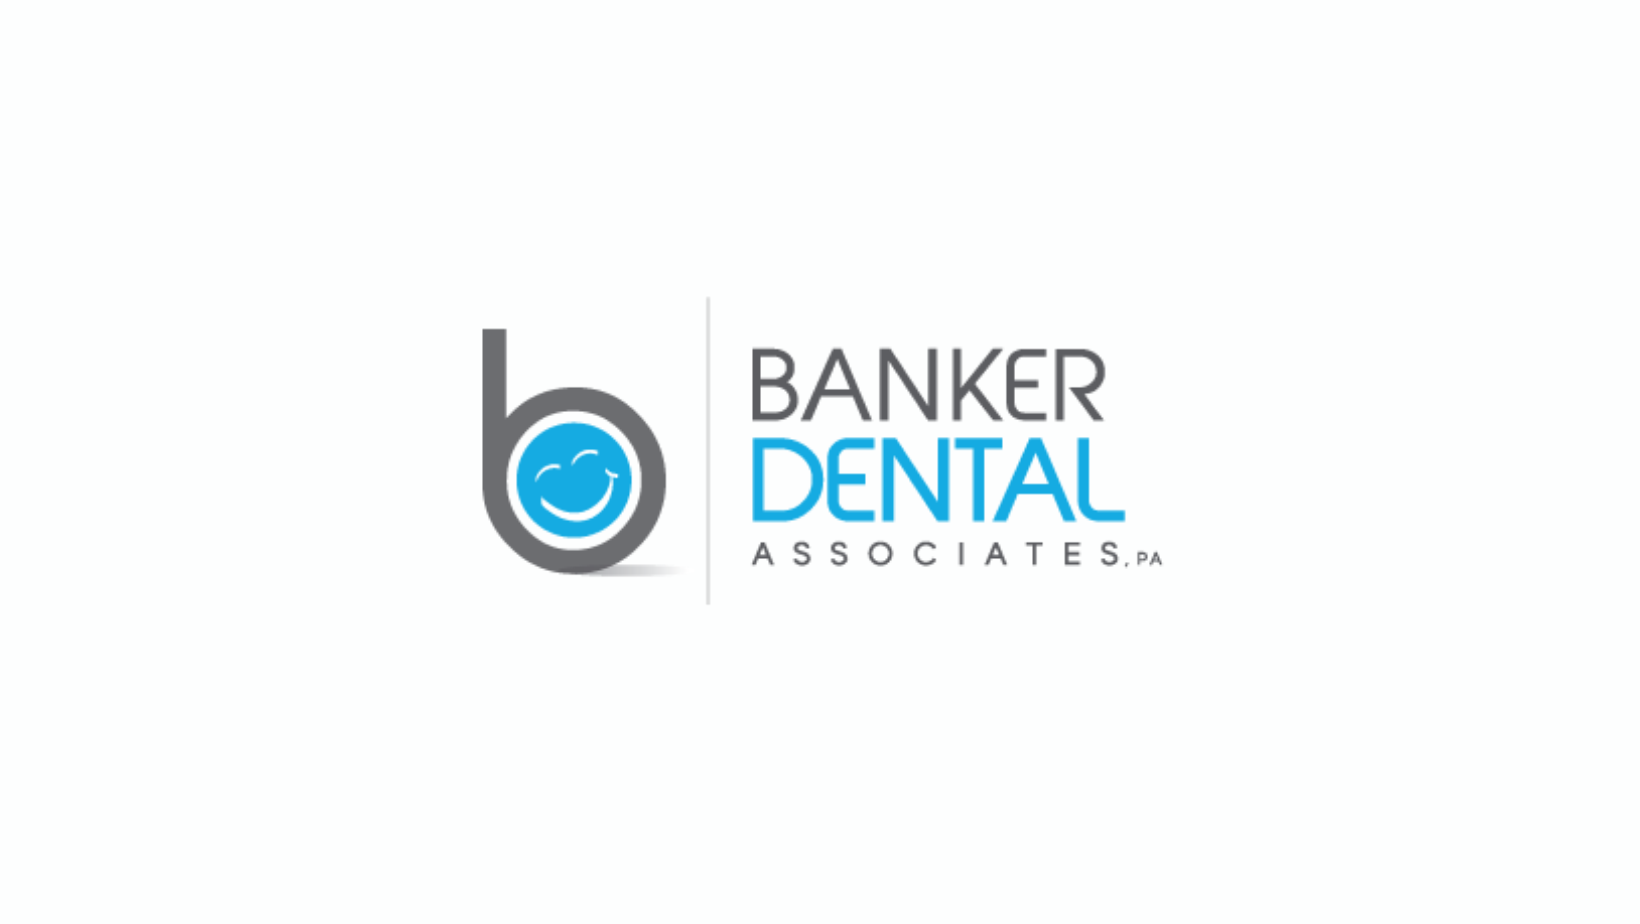 Dental365 Acquires Banker Dental Associates located in Elizabeth, NJ